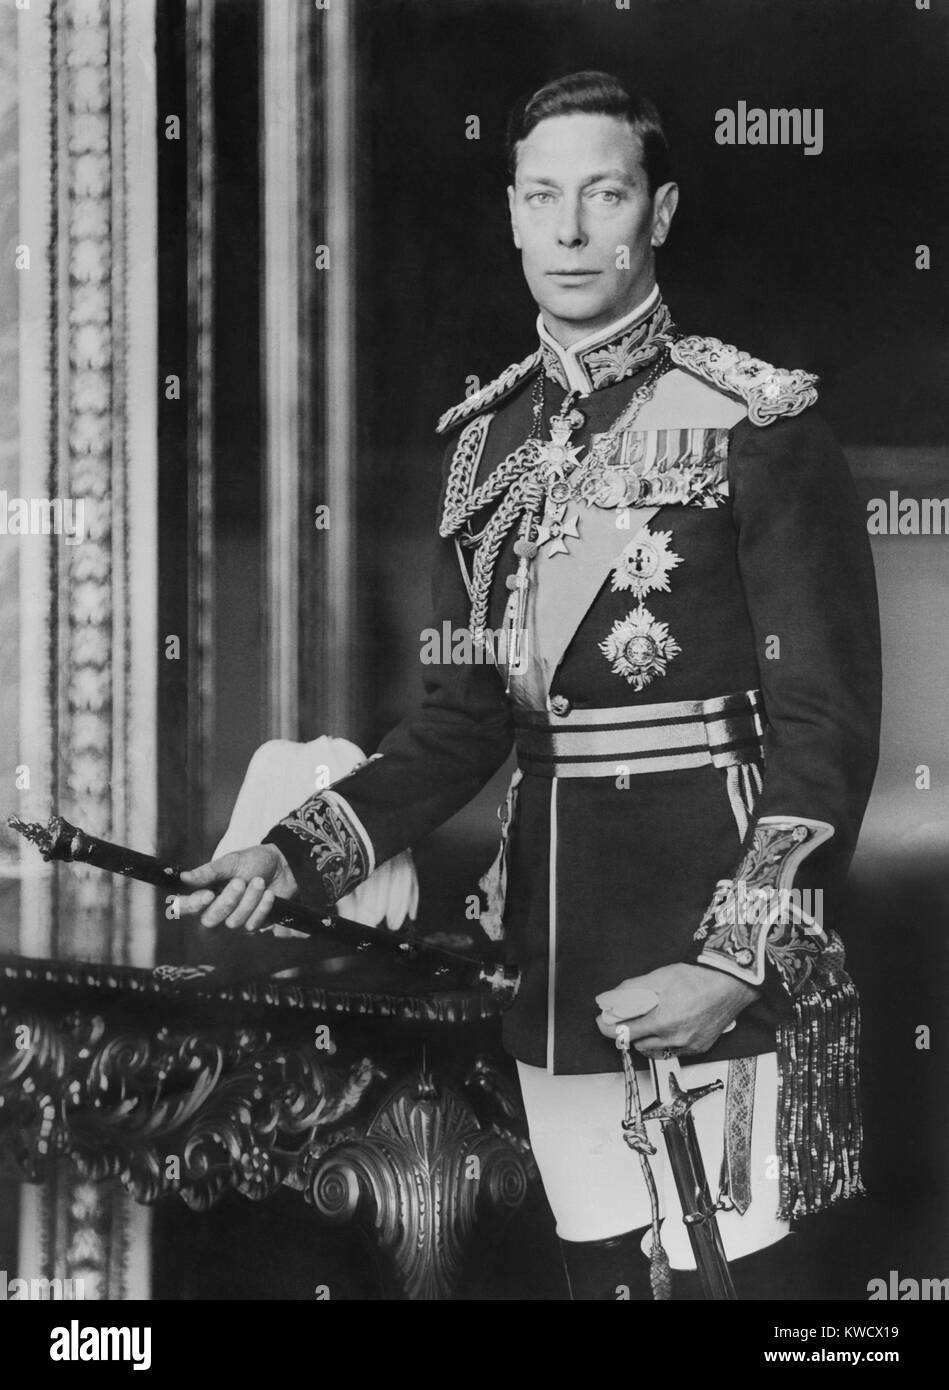 König Georg VI. von Großbritannien, kurz vor seiner Krönung im Mai 1937 (BSLOC 2017 1 89) Stockfoto